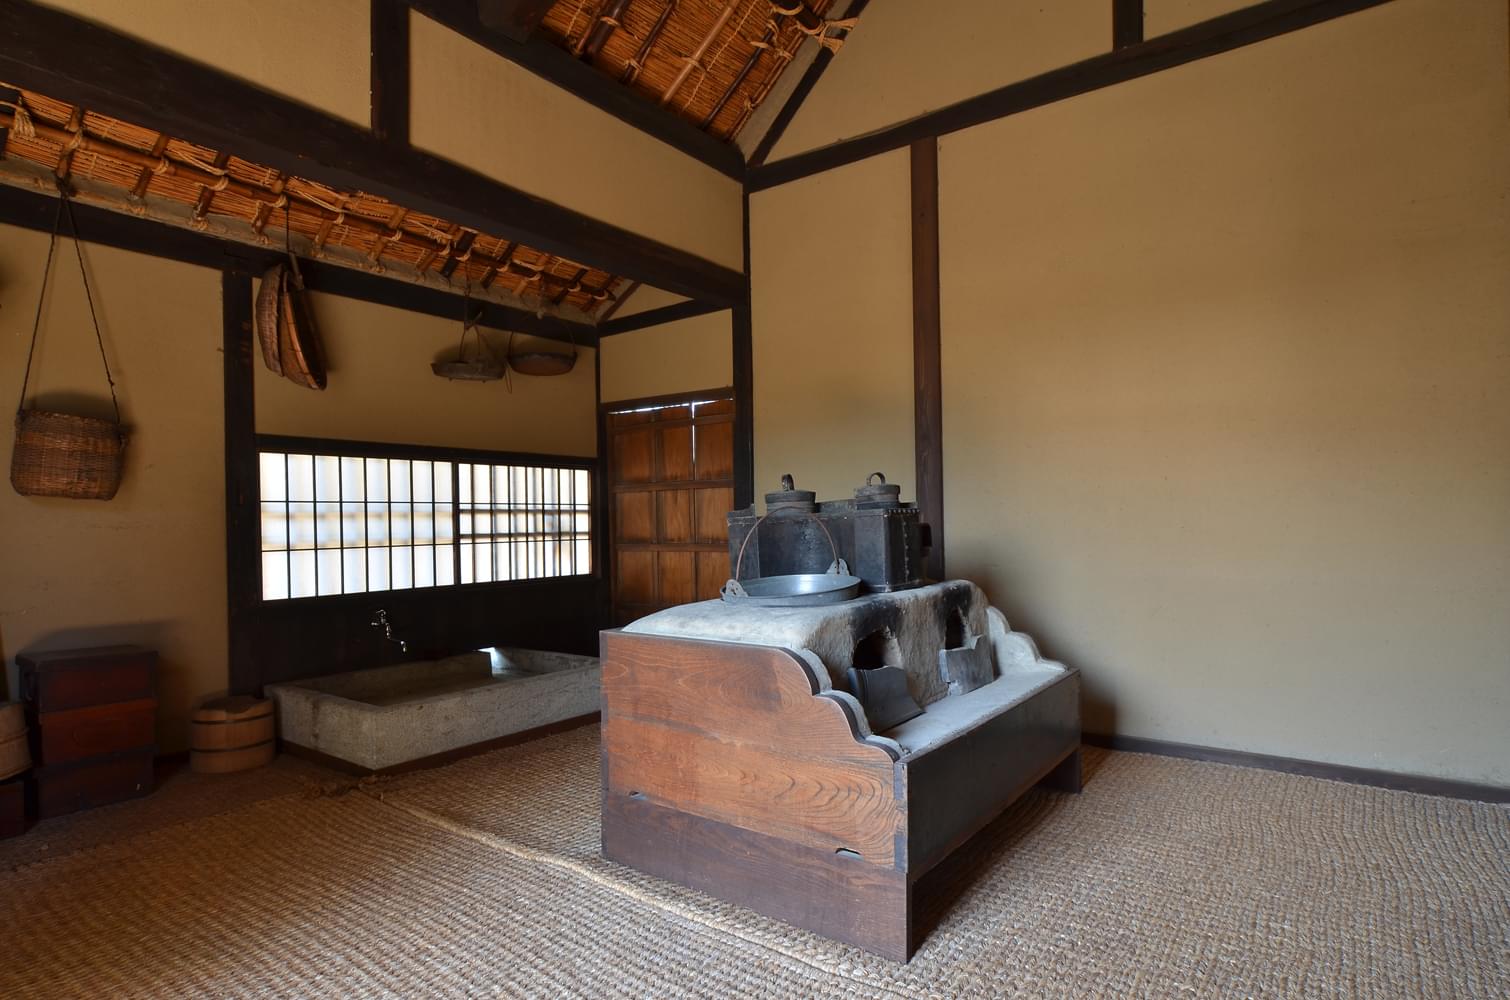 【長野】城下町・松代の武家屋敷で歴史を感じよう！